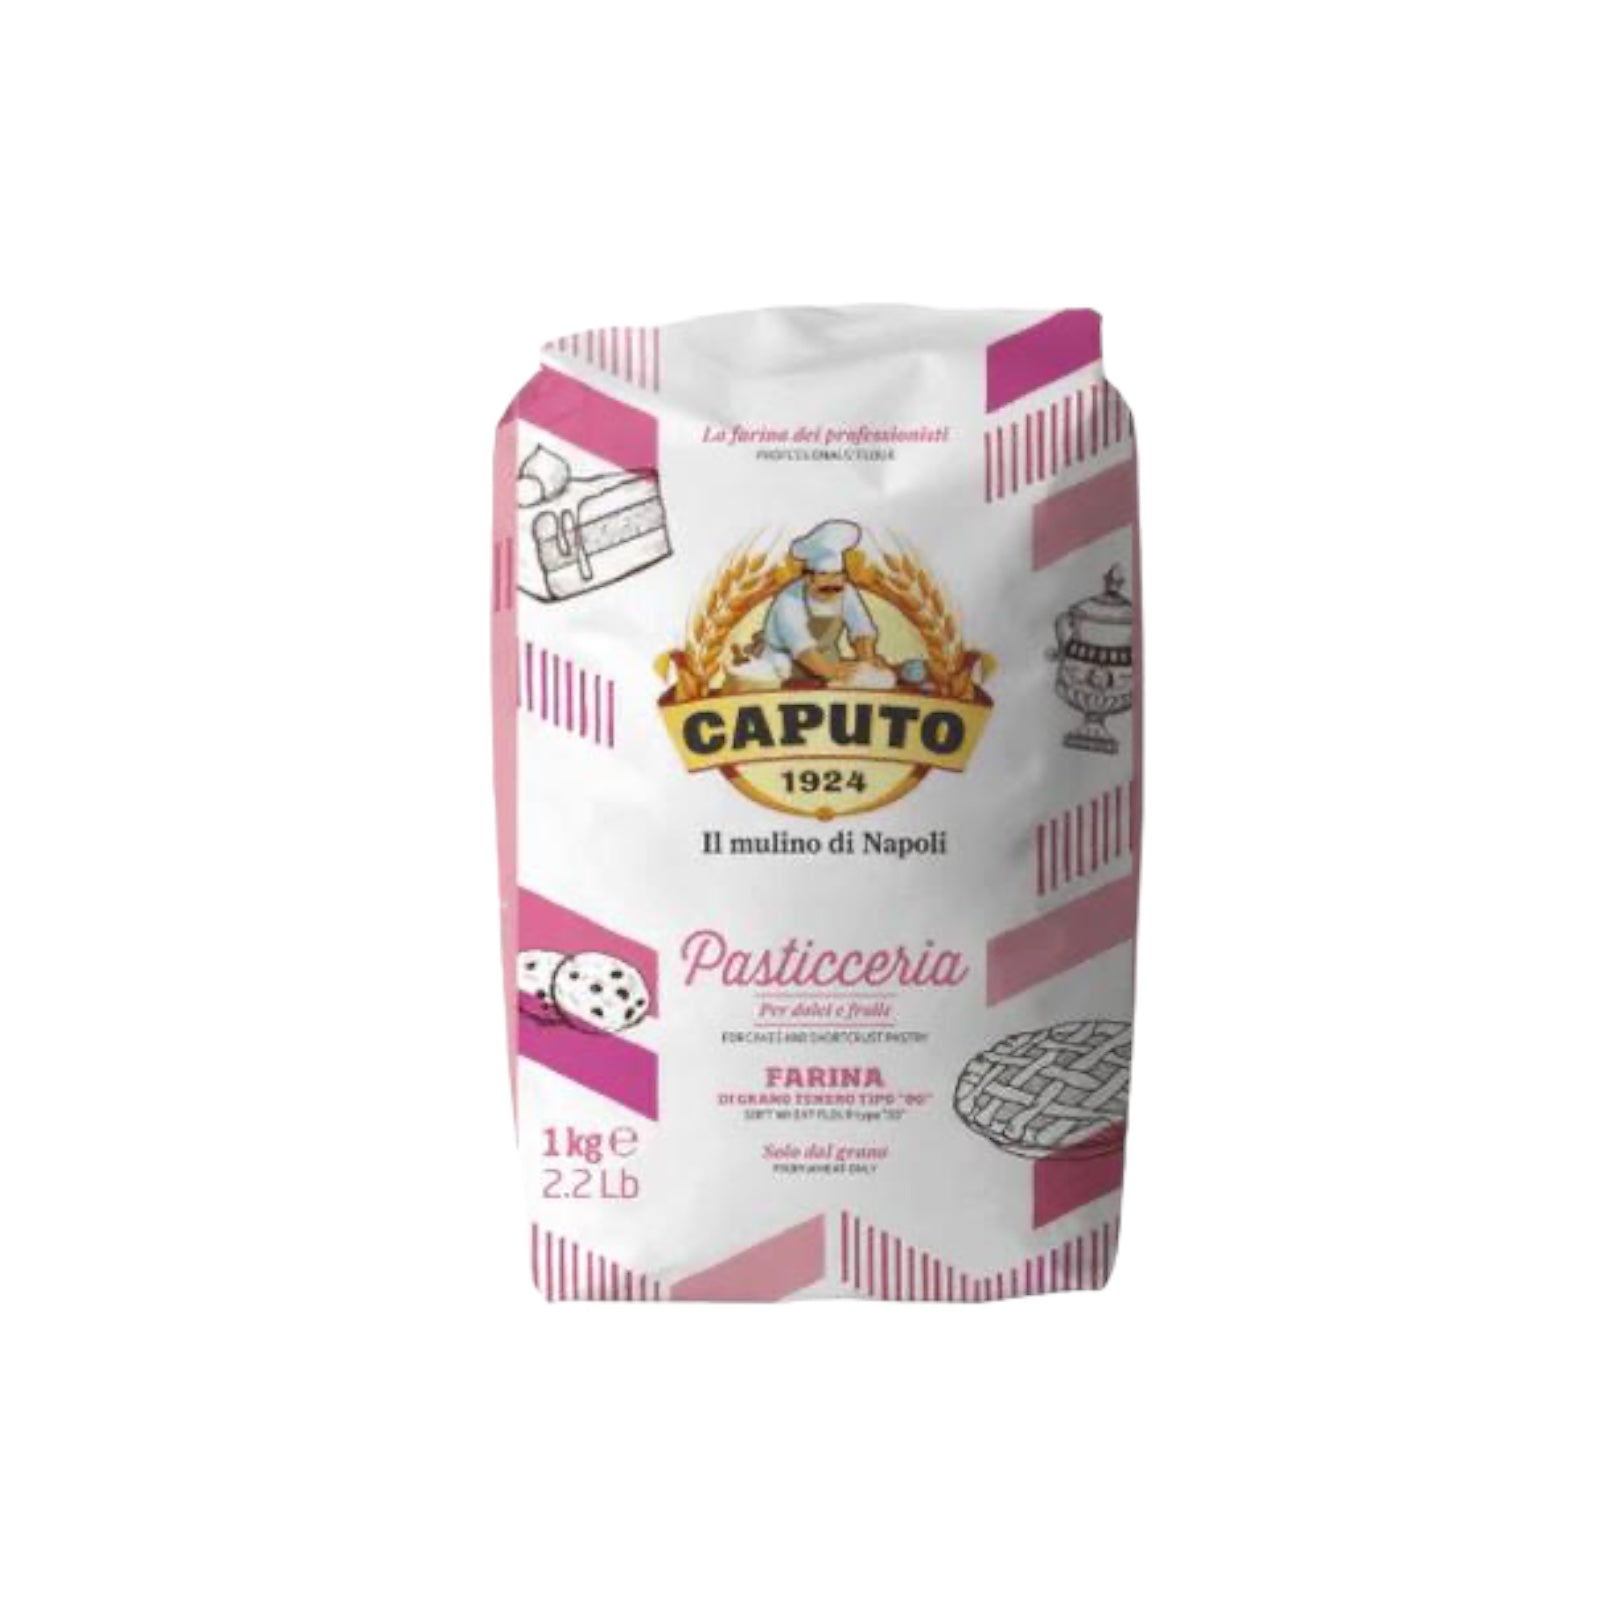 Caputo Flour Pasticceria Type “00” 2.2lb